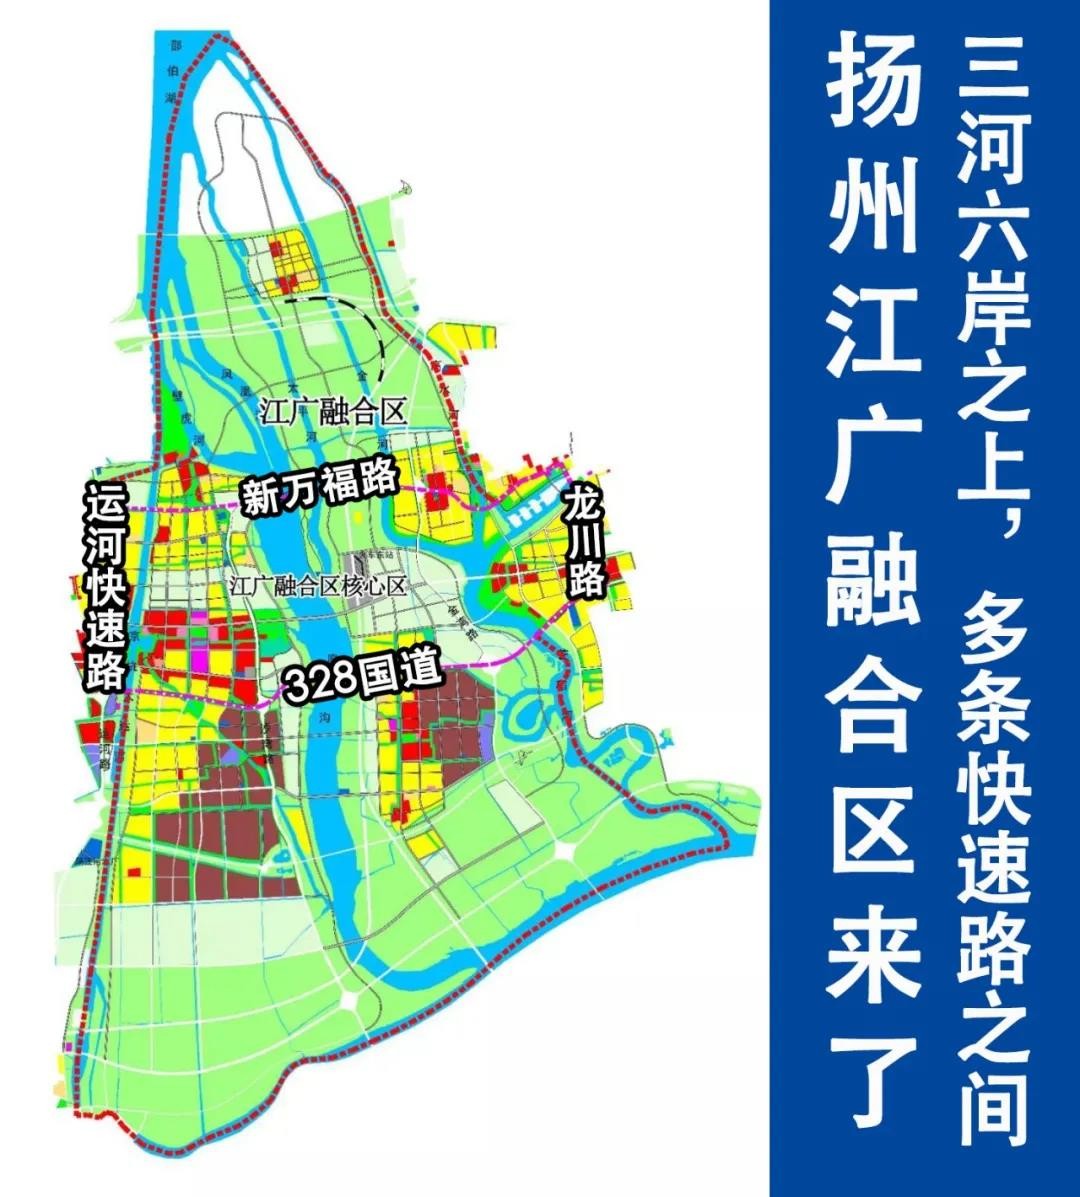 扬州沙头规划五个版图图片